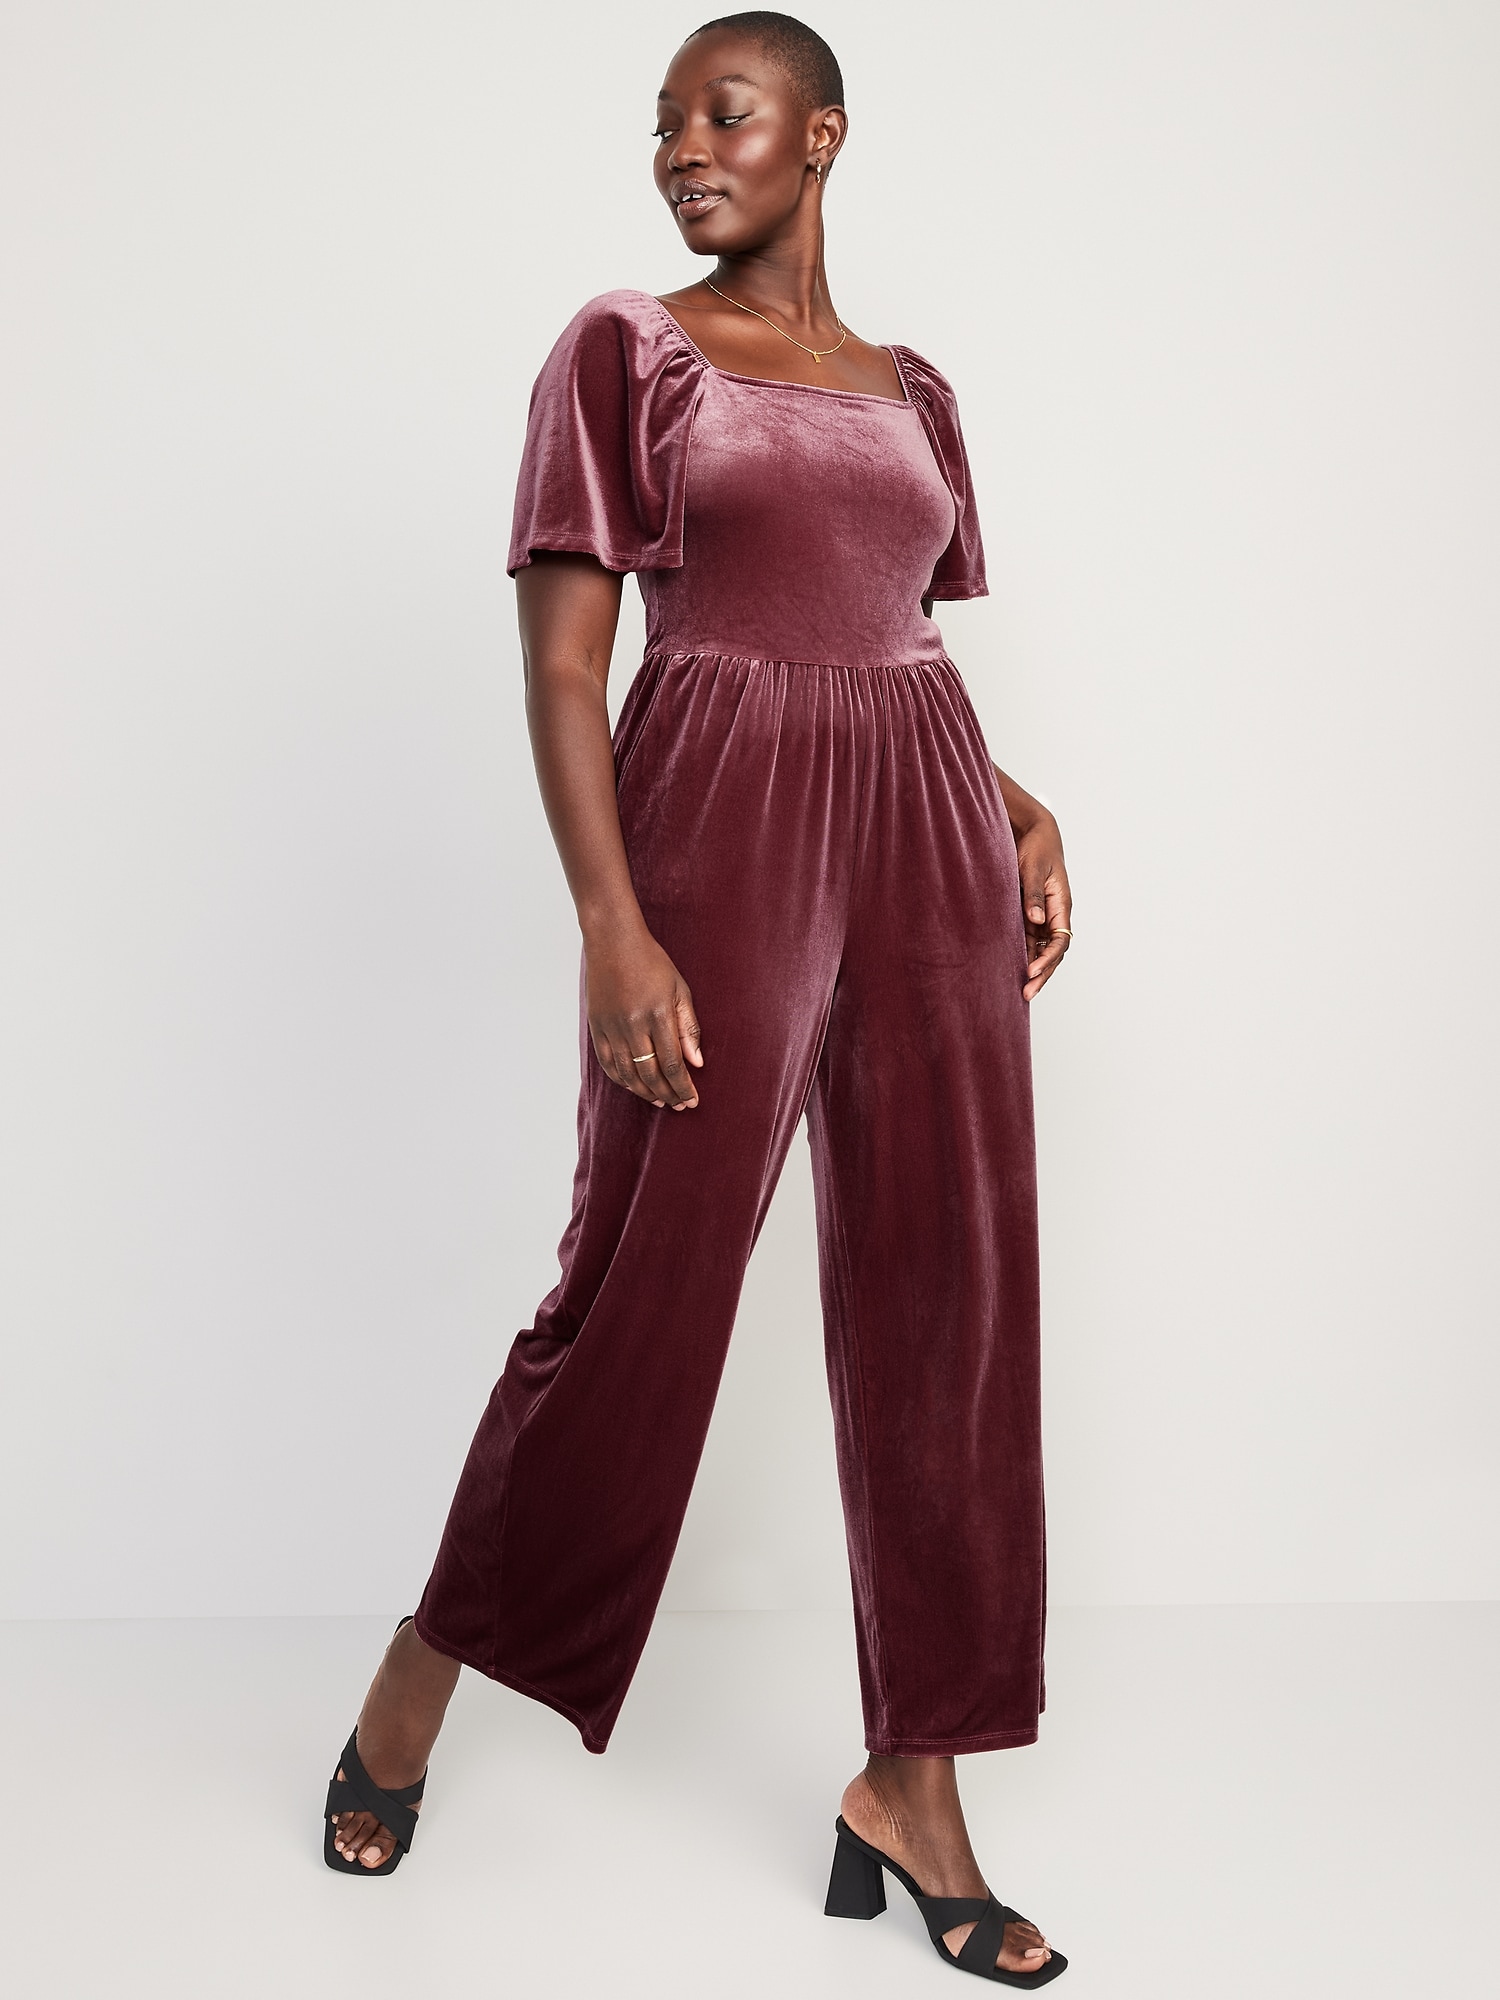 Navy Velvet Pant Suit | Blogger outfit inspiration, Pantsuit, Fashion  blogger outfit